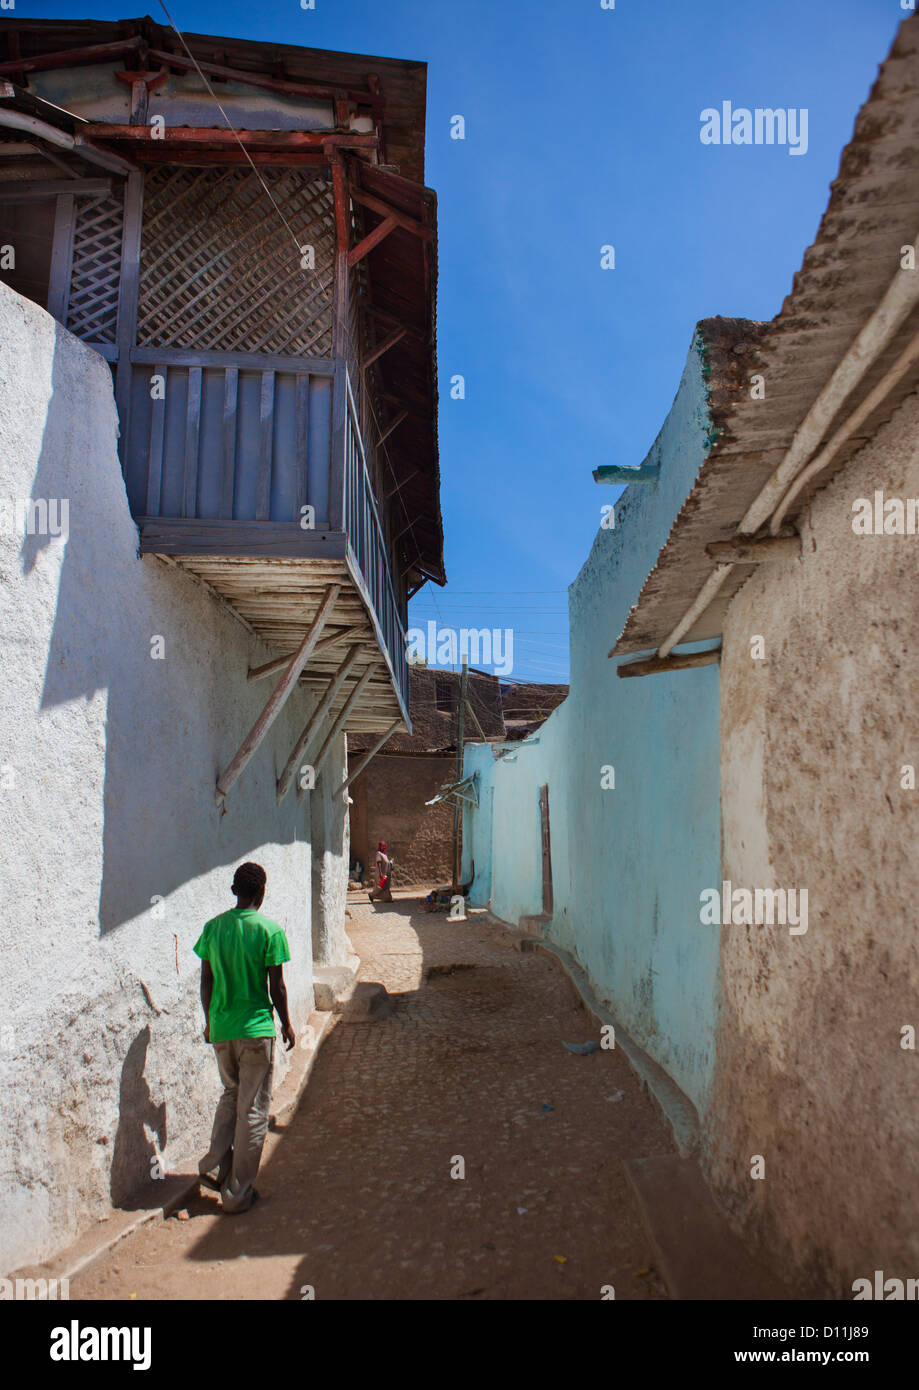 Mann In einer schmalen Straße von der alten Stadt von Harar, Äthiopien Stockfoto